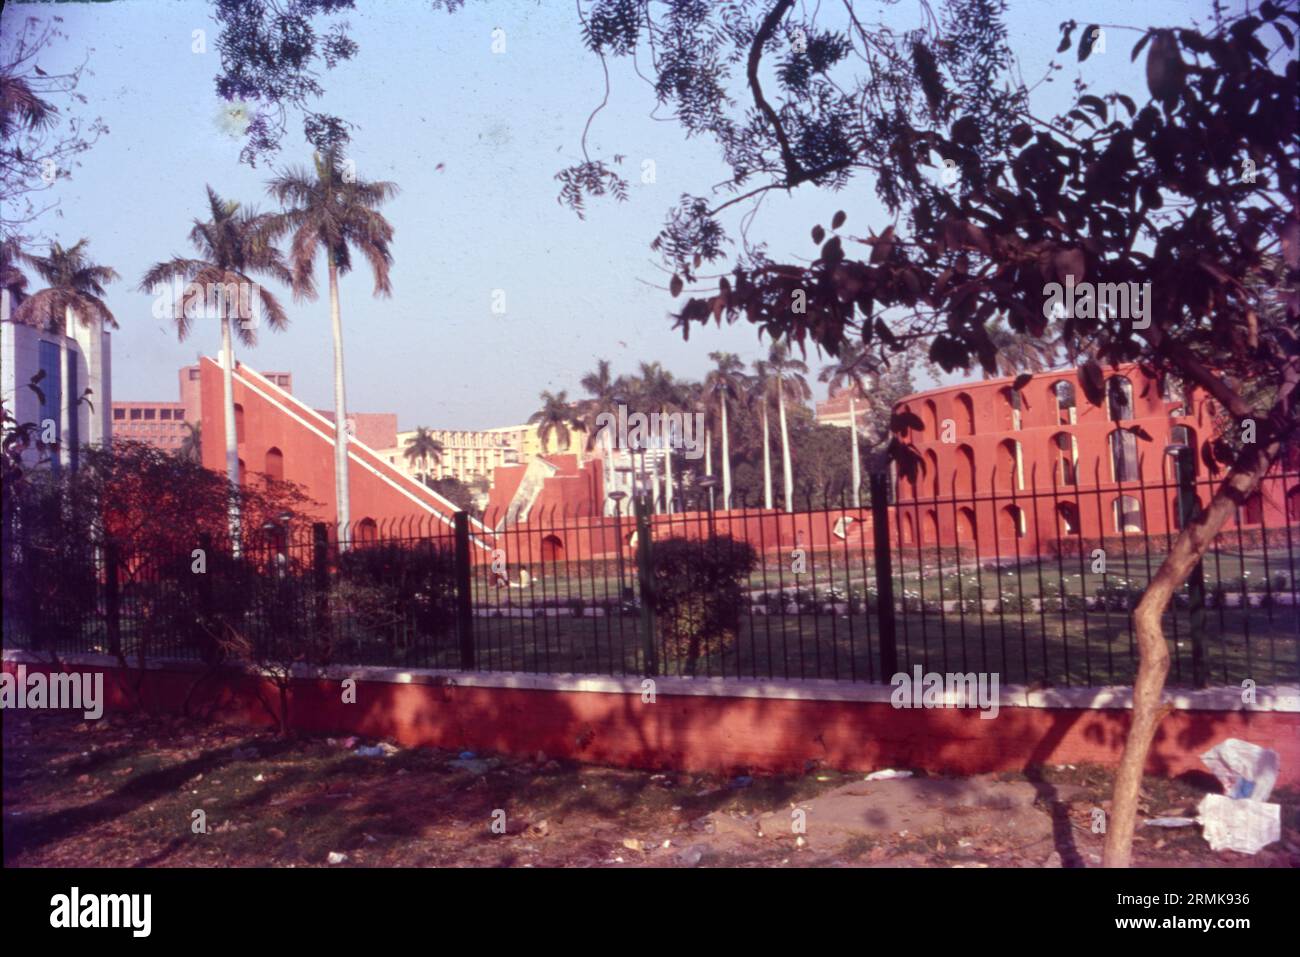 Jantar Mantar liegt in der modernen Stadt Neu-Delhi. "Jantar Mantar" bedeutet "Instrumente zur Messung der Harmonie des Himmels". Es besteht aus 13 architektonischen astronomischen Instrumenten. Connaught Place, Sansad Marg, Neu-Delhi. Jantar Mantar wurde 1724 von Maharaja Jai Singh II. Aus Jaipur erbaut und ist eines der fünf astronomischen Observatorien, die der König in Nordindien errichtet hat. Die eindrucksvollen Kombinationen geometrischer Formen haben Architekten, Künstler und Kunsthistoriker aus aller Welt auf sich aufmerksam gemacht. Stockfoto